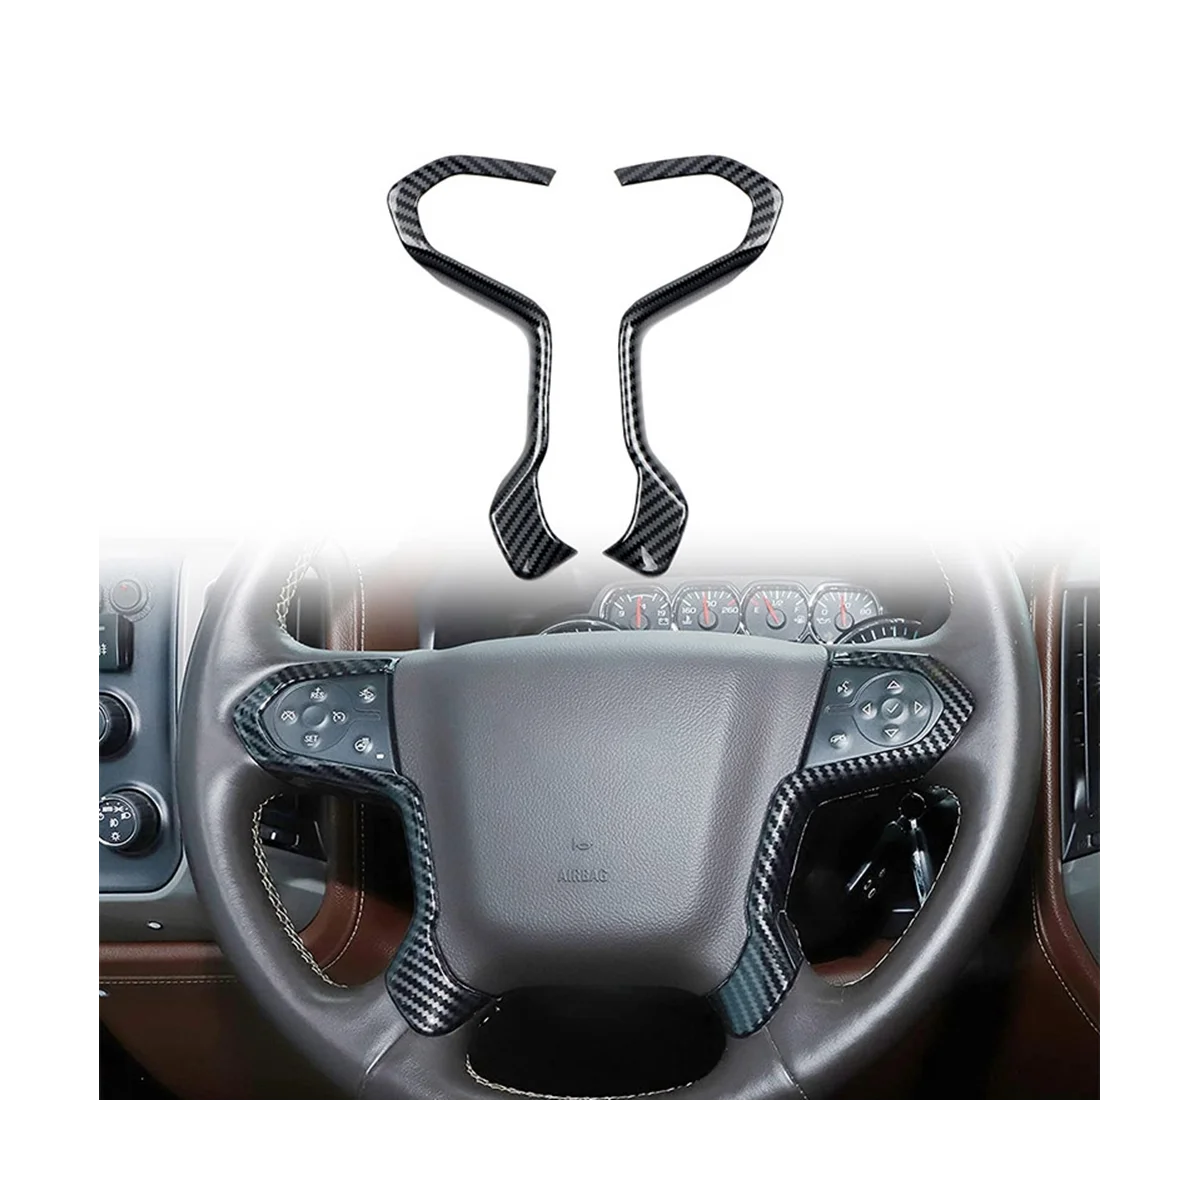 Araba Karbon Fiber direksiyon Paneli Kapak Trim Çerçeve Sticker Chevrolet Silverado 2014 için 2015 2016 2017 2018